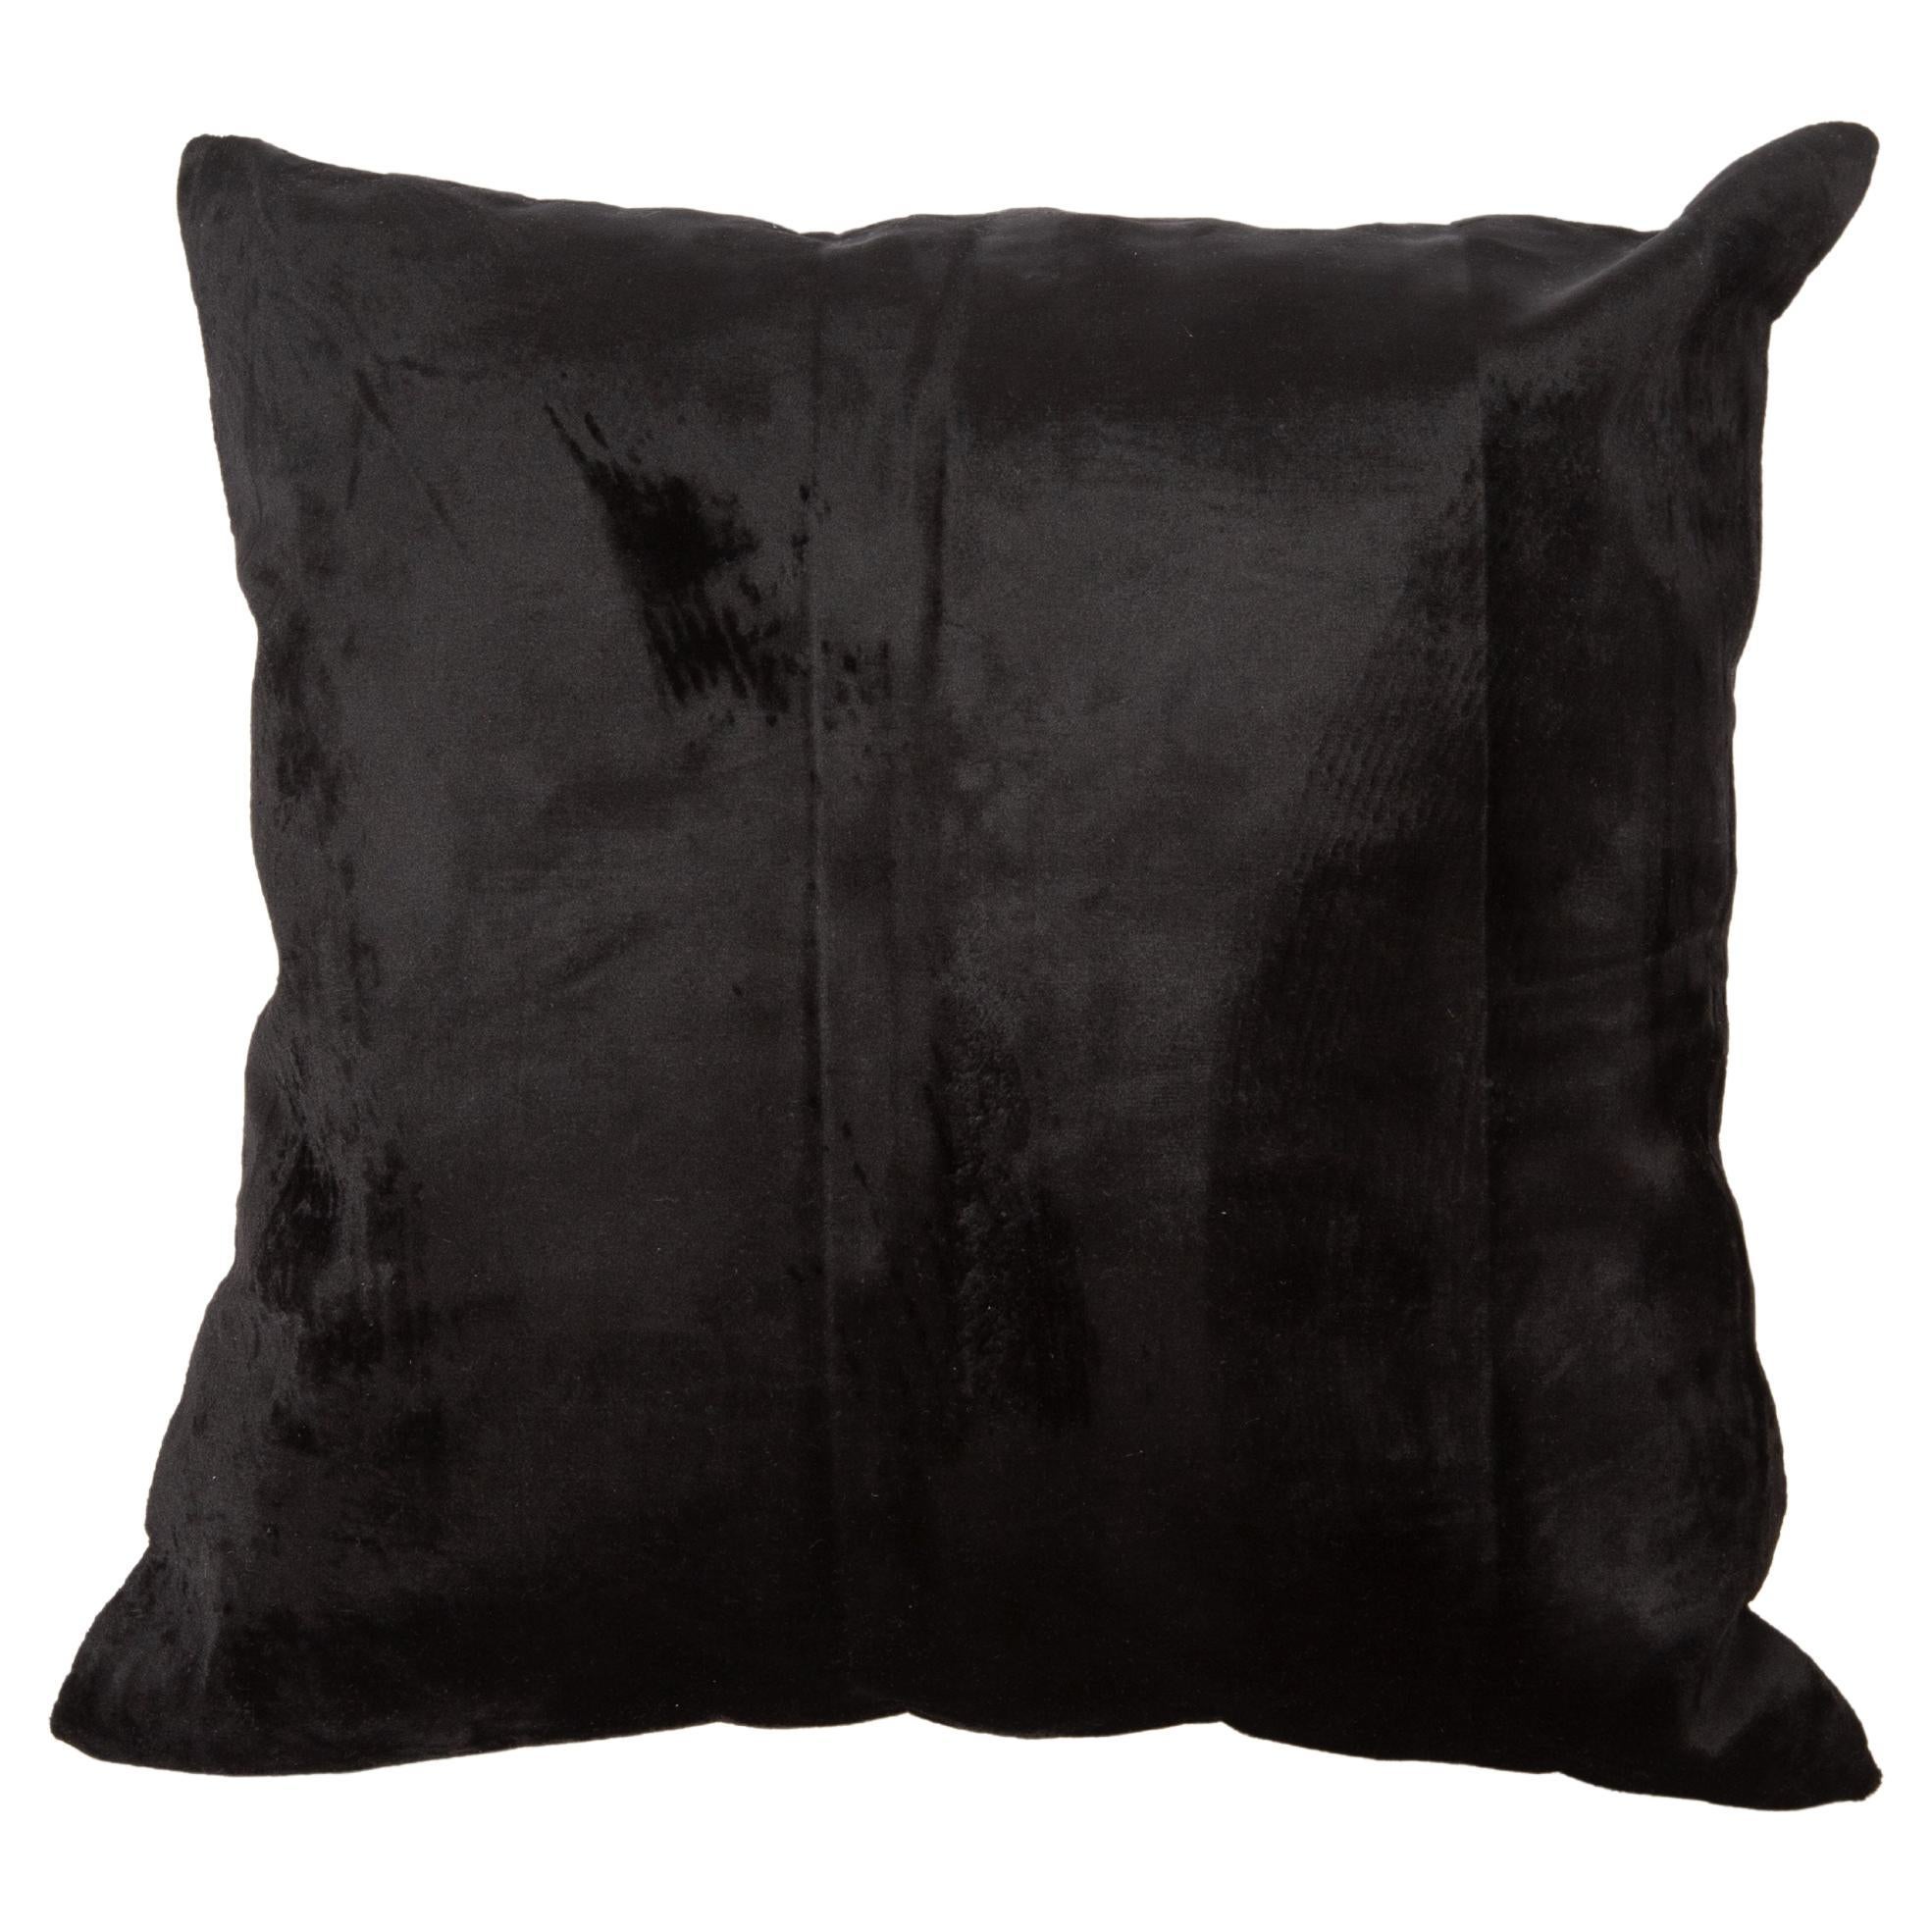 Pillow Case Made from a Mid 20th C. Silk Uzbek Velvet For Sale